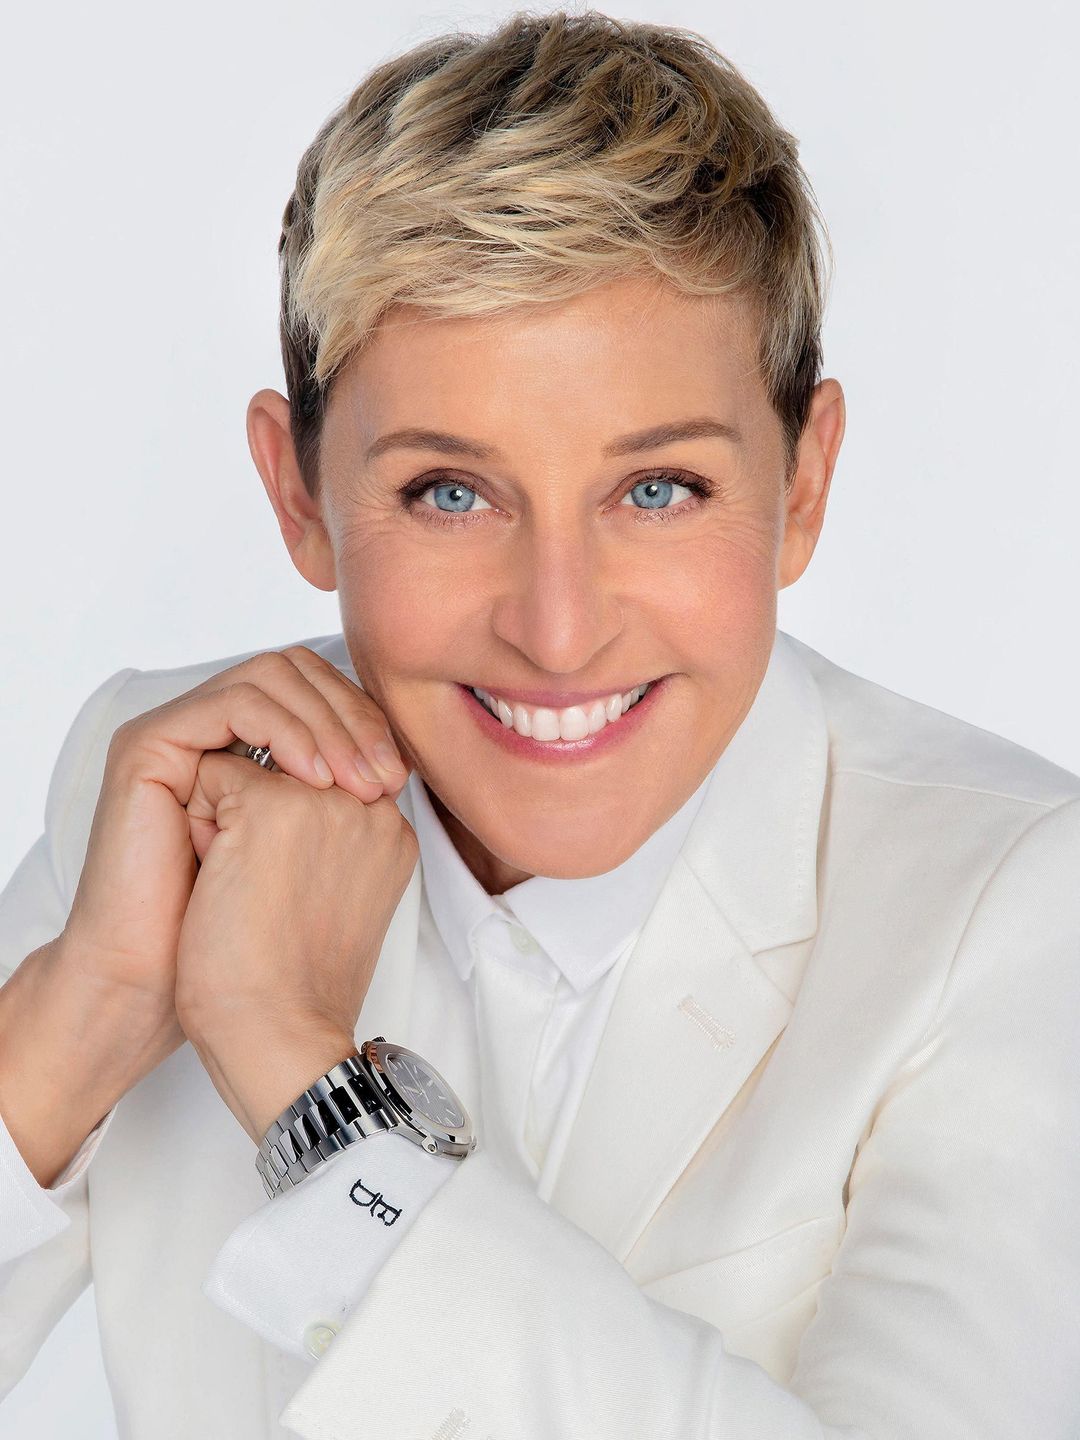 Ellen DeGeneres early childhood